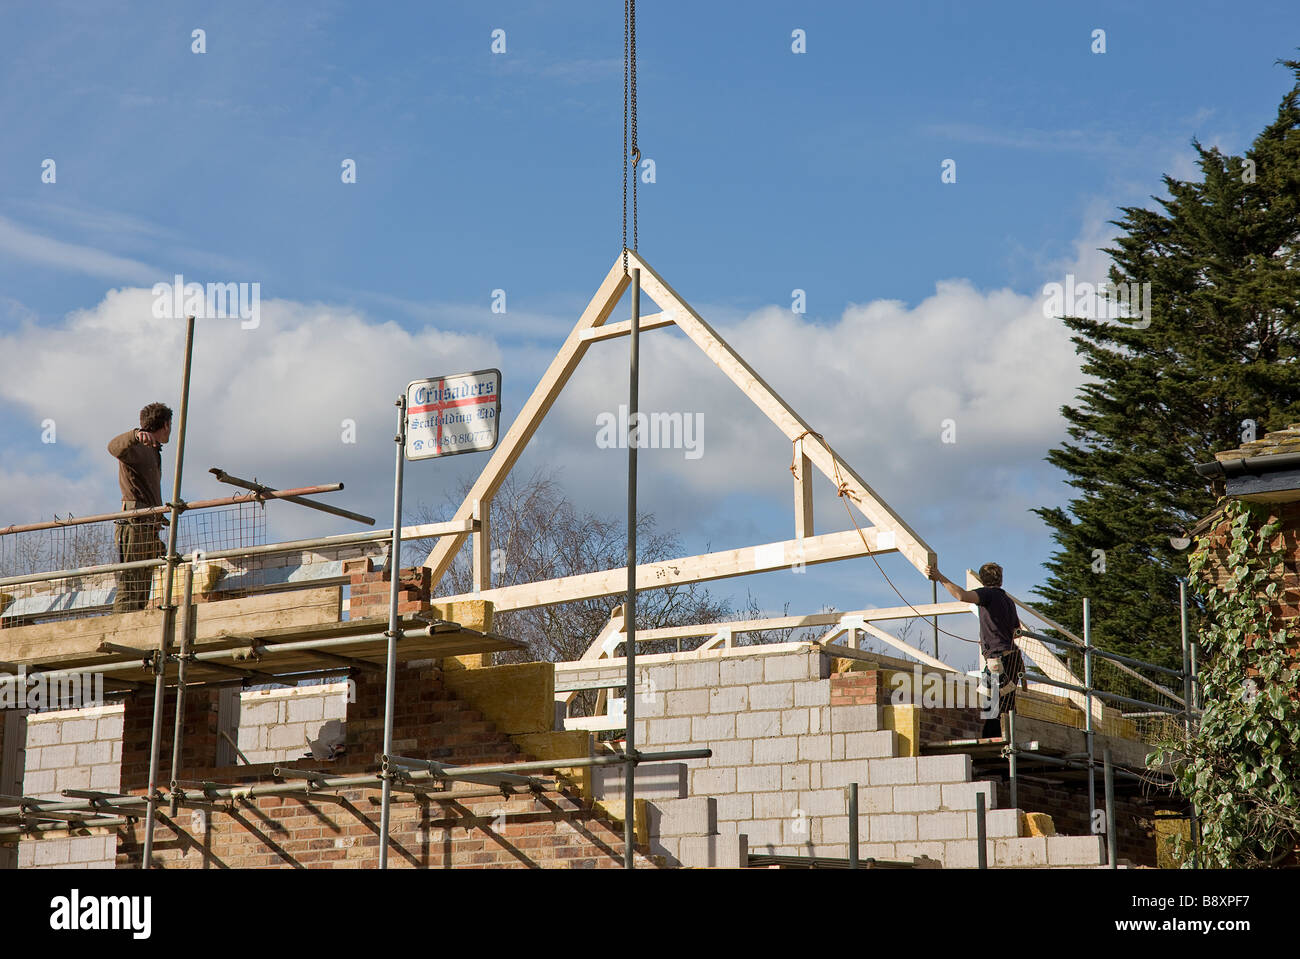 Il primo principale sul tetto soffitta architrave essendo abbassato nella posizione corretta pronto per iniziare a costruire il tetto per la nuova casa Foto Stock